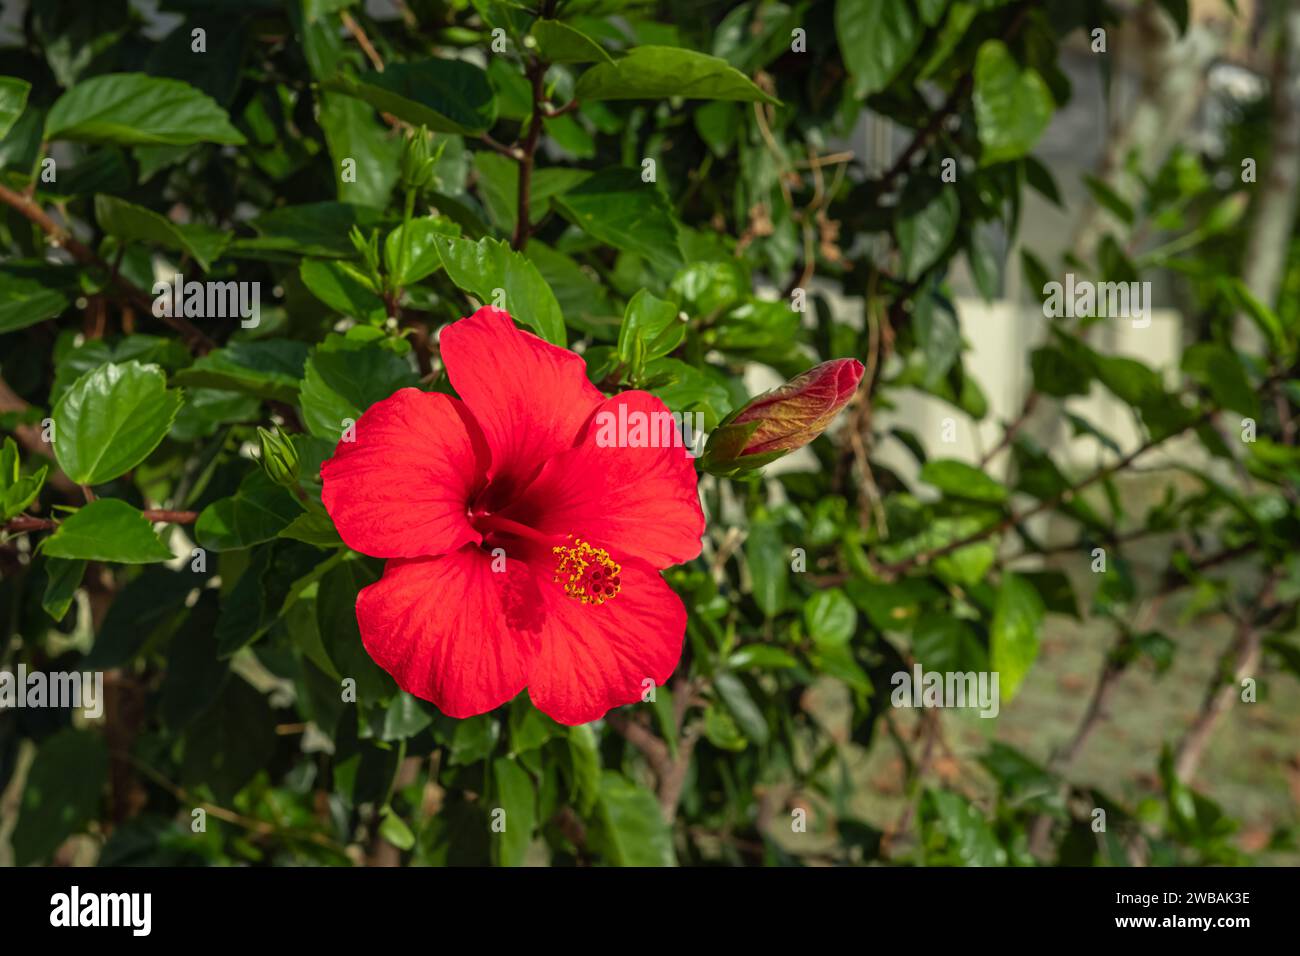 Grande fiore di ibisco rosso brillante con foglie verdi in un giardino. L'hibiscus rosa-sinensis è una pianta da fiore nota come ibisco cinese, rosa cinese, Haw Foto Stock